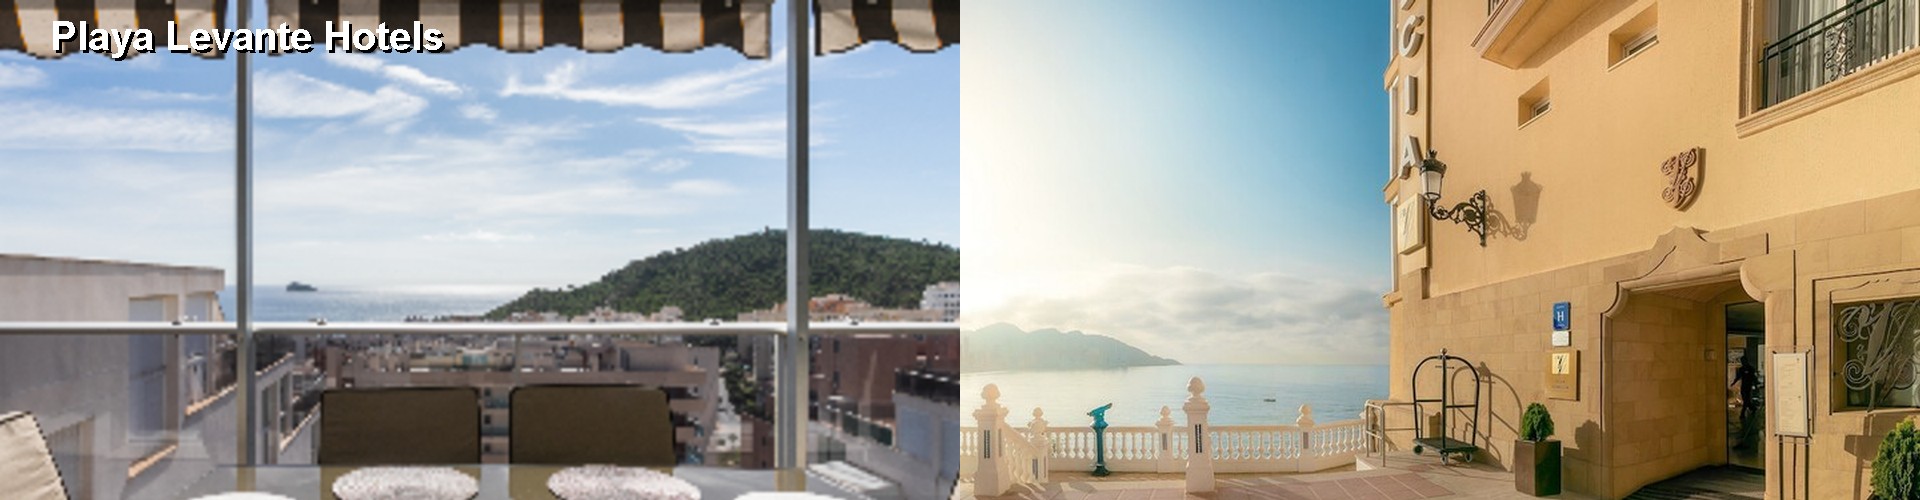 5 Best Hotels near Playa Levante